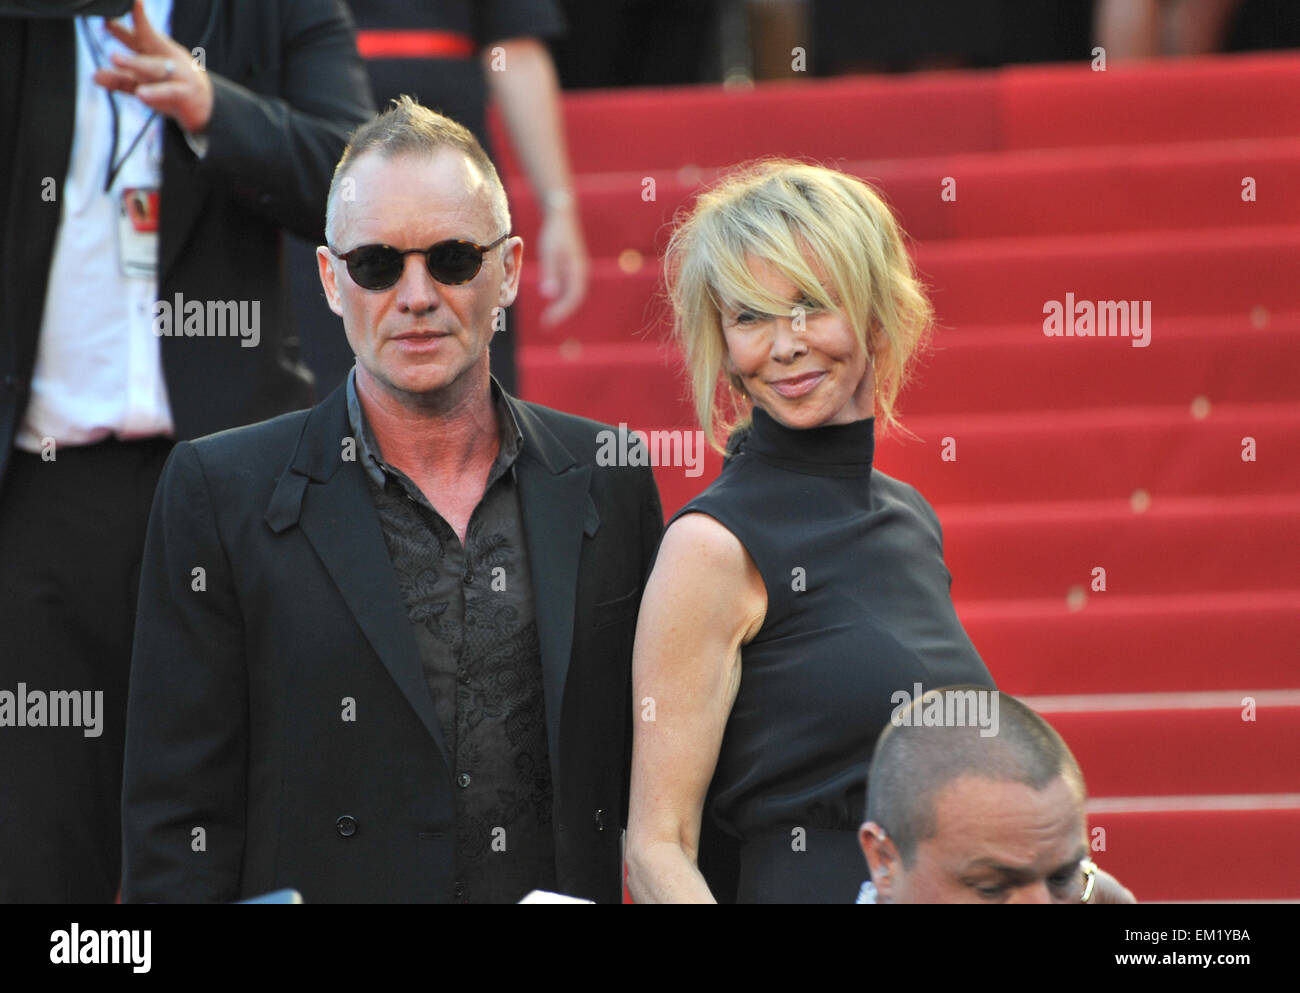 CANNES, Francia - 26 de mayo de 2012: Sting y Trudie Styler en la proyección de gala de 'Mud' en Cannes. Mayo 26, 2012 Cannes, Francia Foto de stock